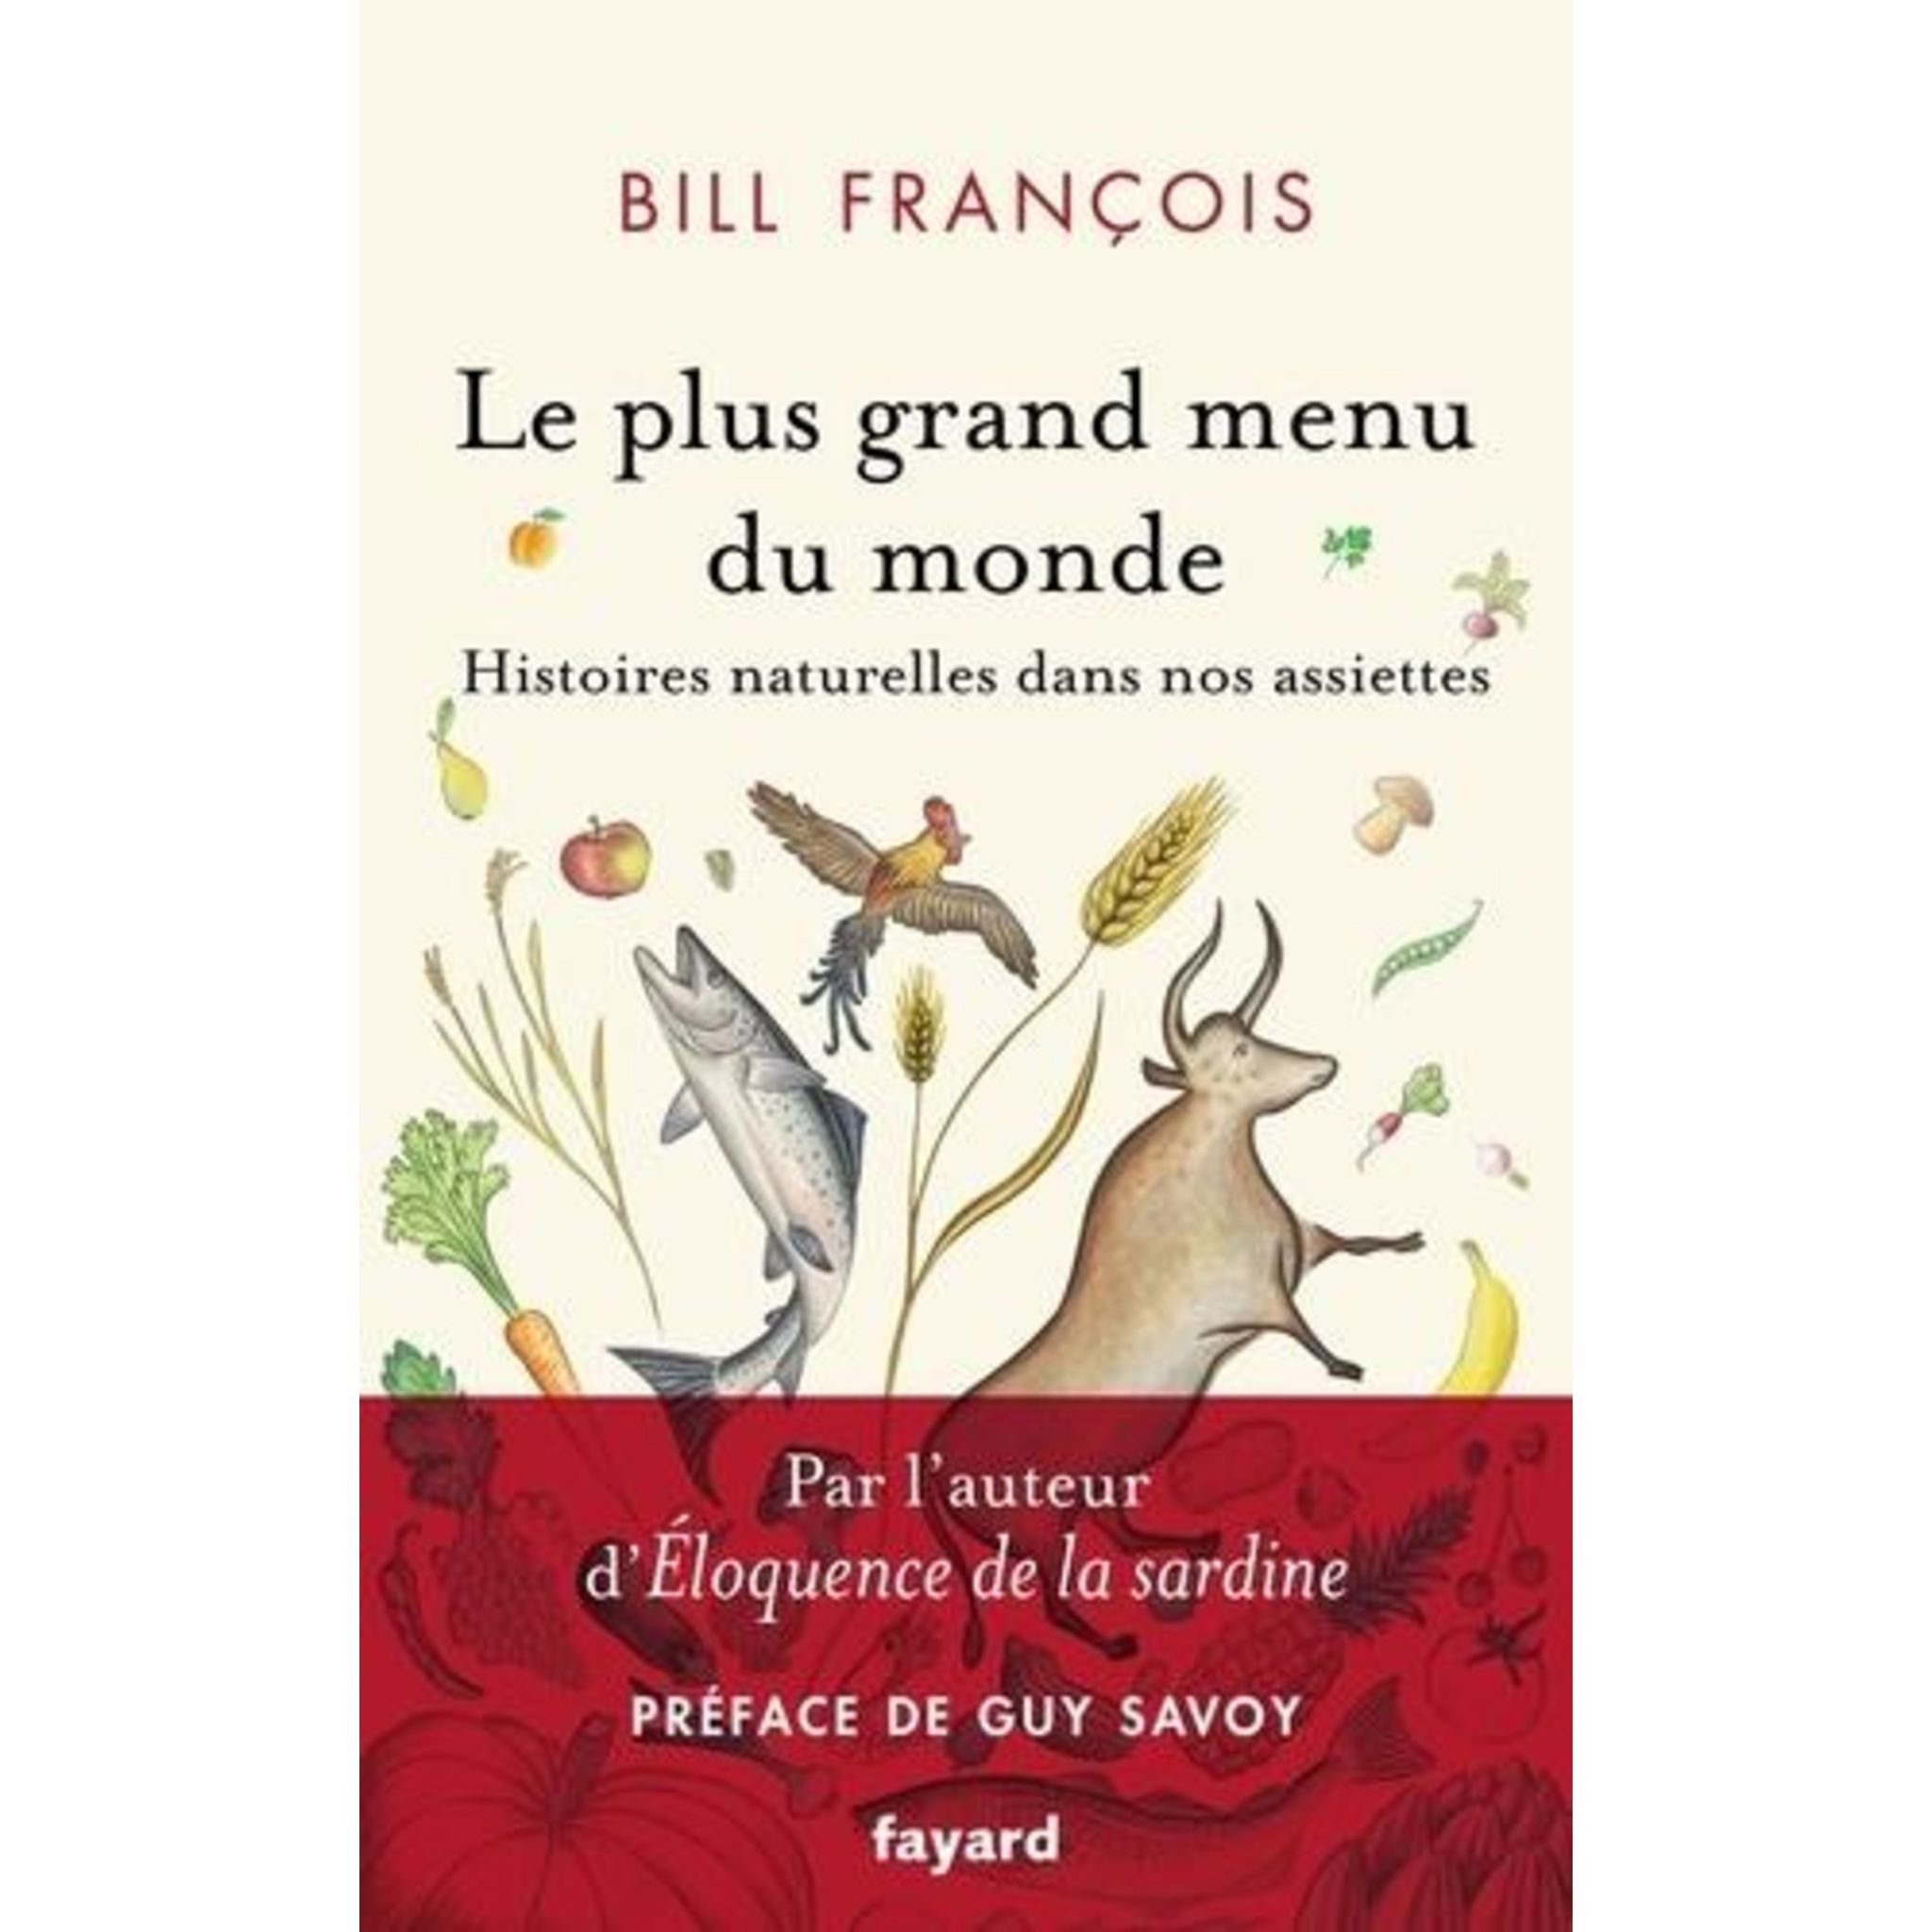 Bill François